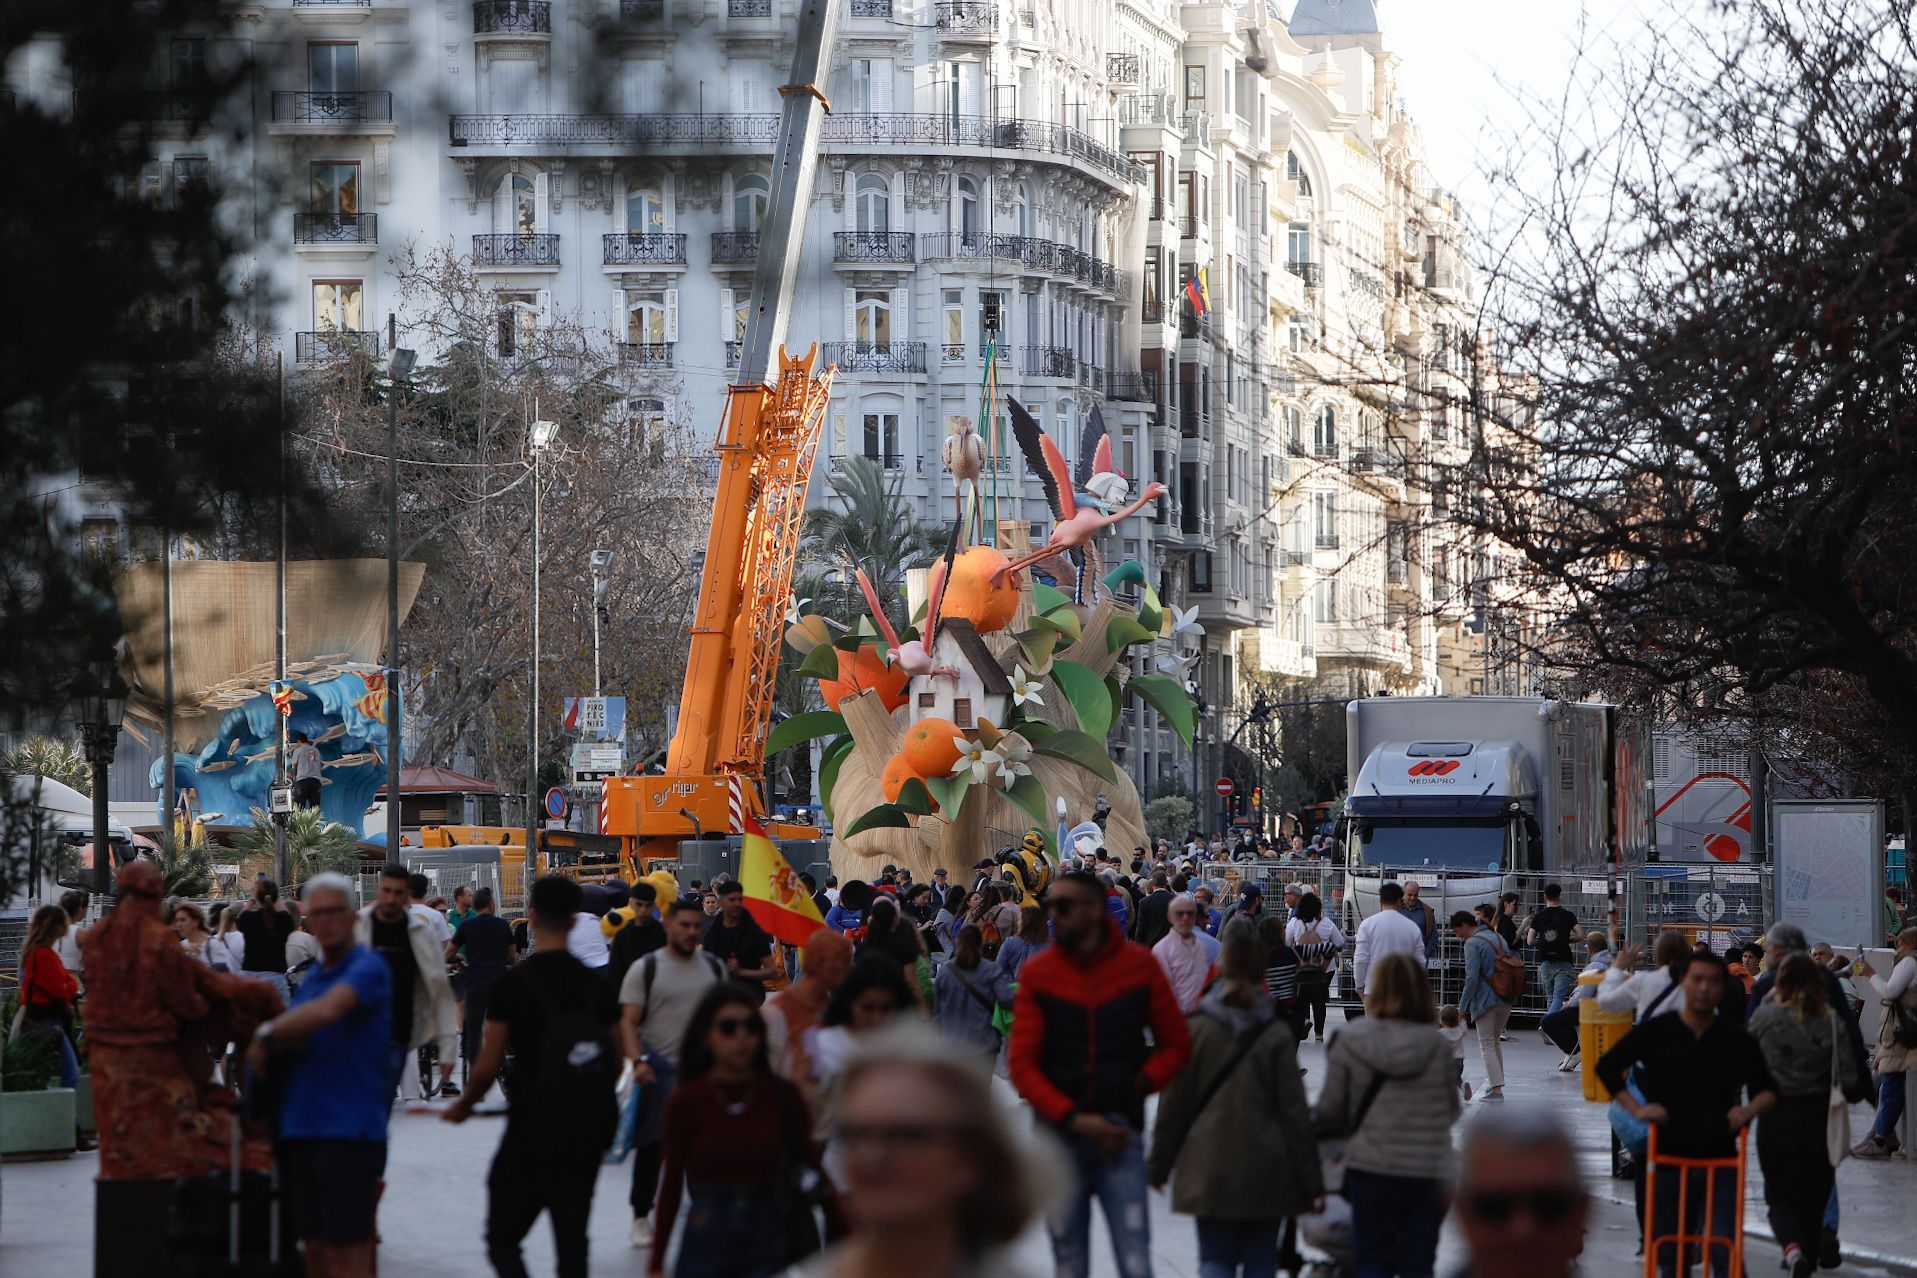 El centro de València se prepara para un lleno total el fin de semana